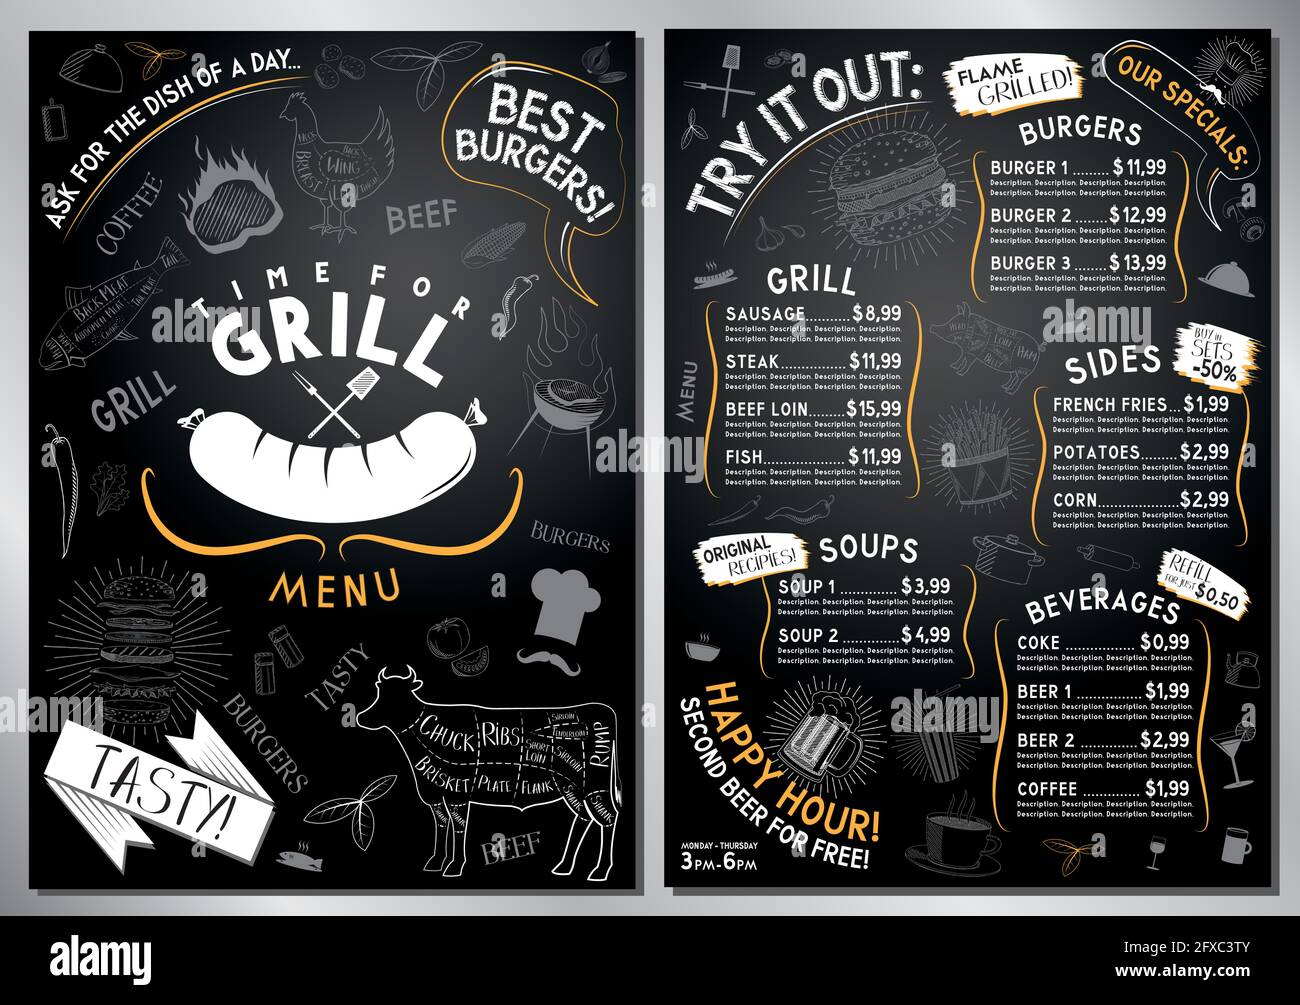 Grill, Grillmenü-Vorlage - A4-Karte (Burger, Grill, Beilagen, Suppen,  Getränke Stock-Vektorgrafik - Alamy